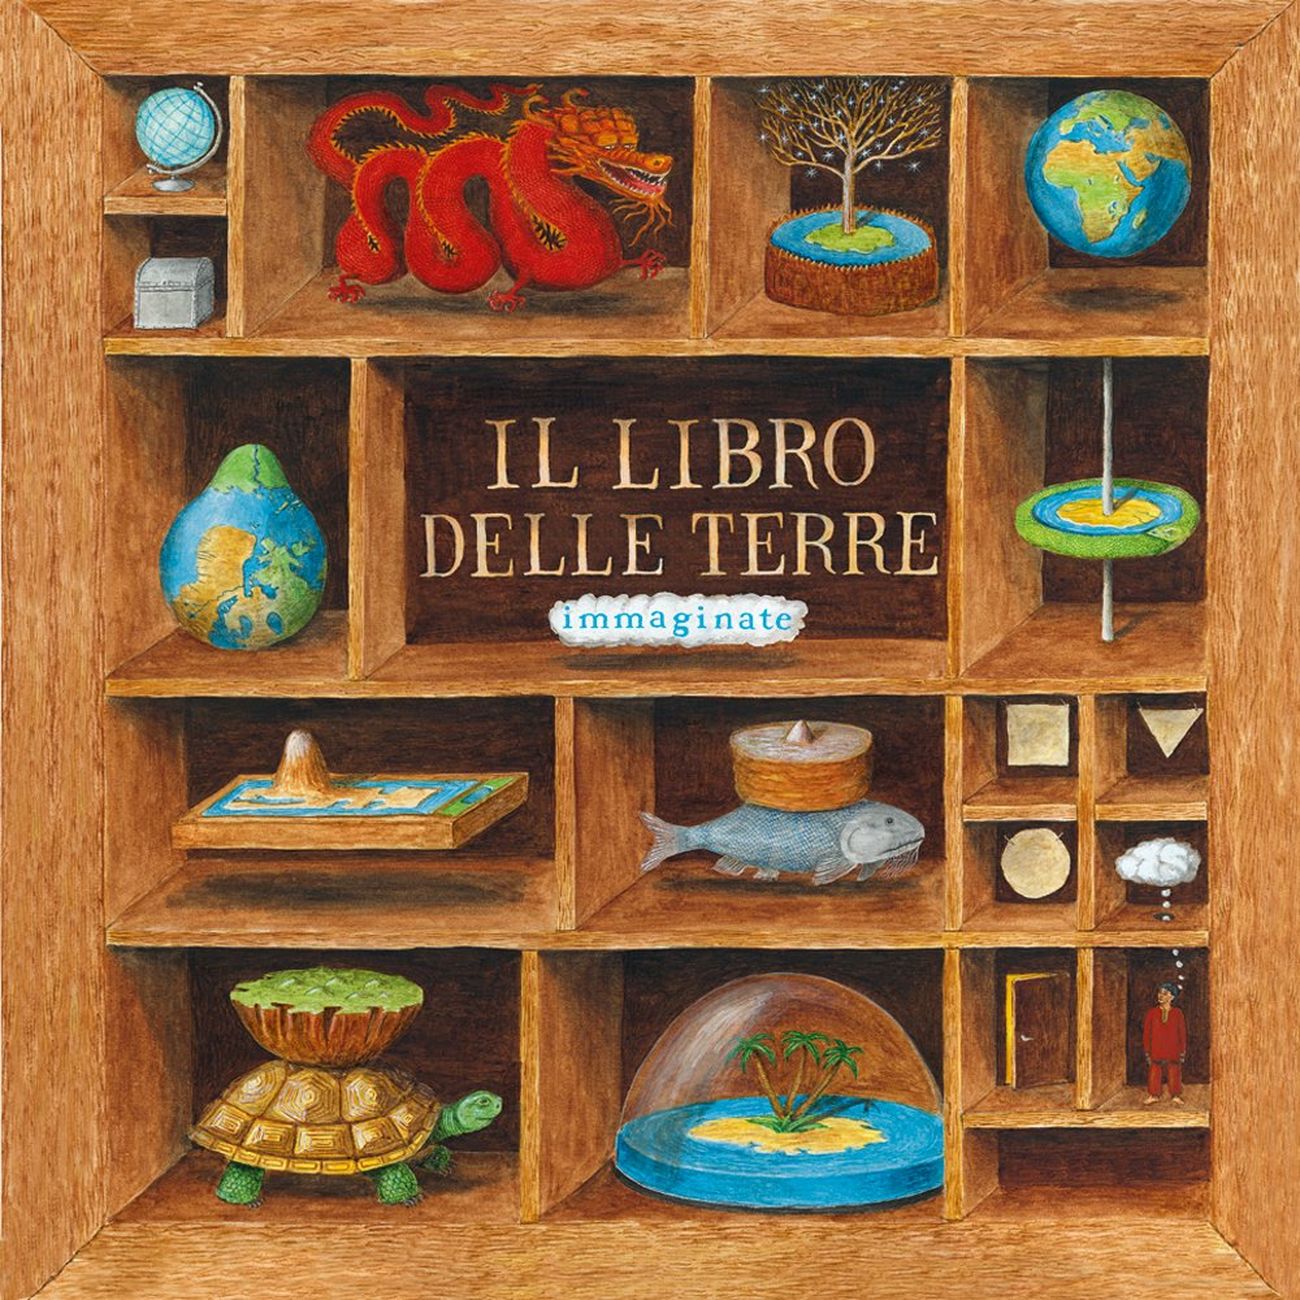 Guillaume Duprat – Il libro delle terre immaginate (L’Ippocampo Ragazzi, Milano 2009)